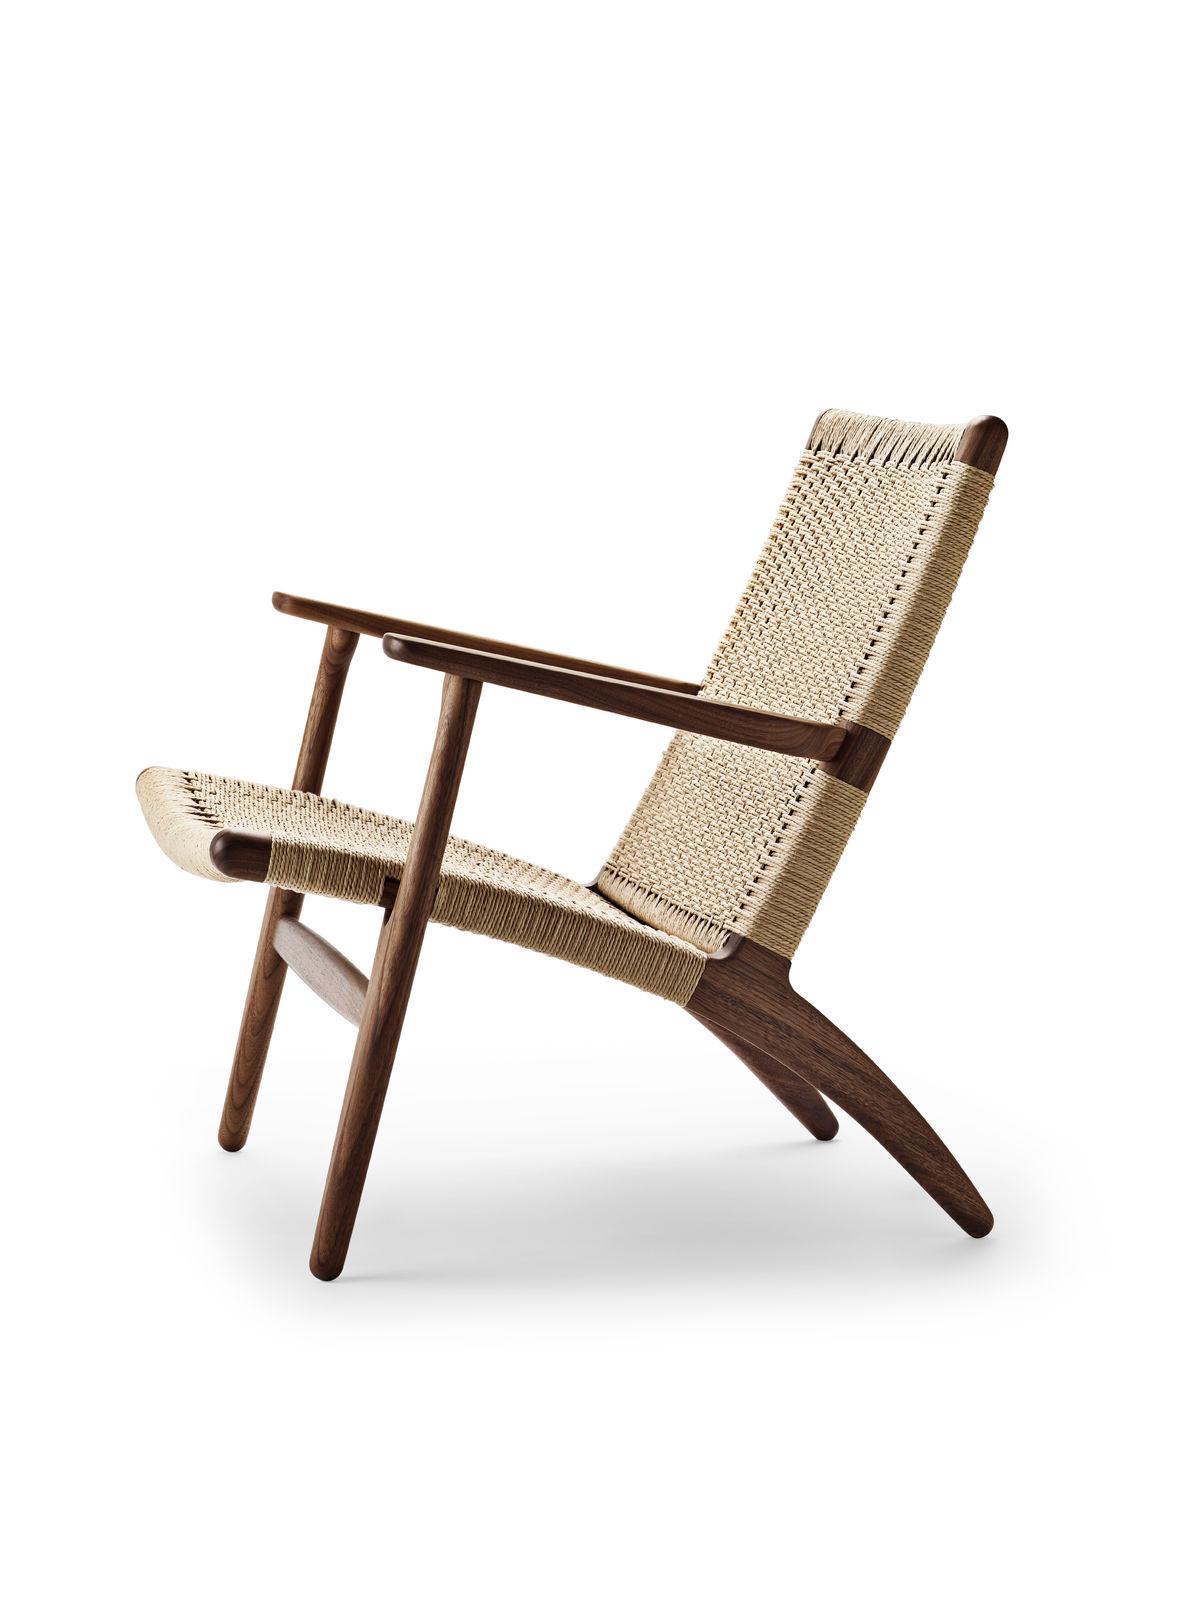 Der CH25 ist einer der ersten vier Stühle, die Hans J. Wegner zu Beginn der 1949 begonnenen Collaboration exklusiv für Carl Hansen & Søn entwarf. Der Stuhl, der damals als revolutionär galt, wurde 1950 in Produktion genommen.